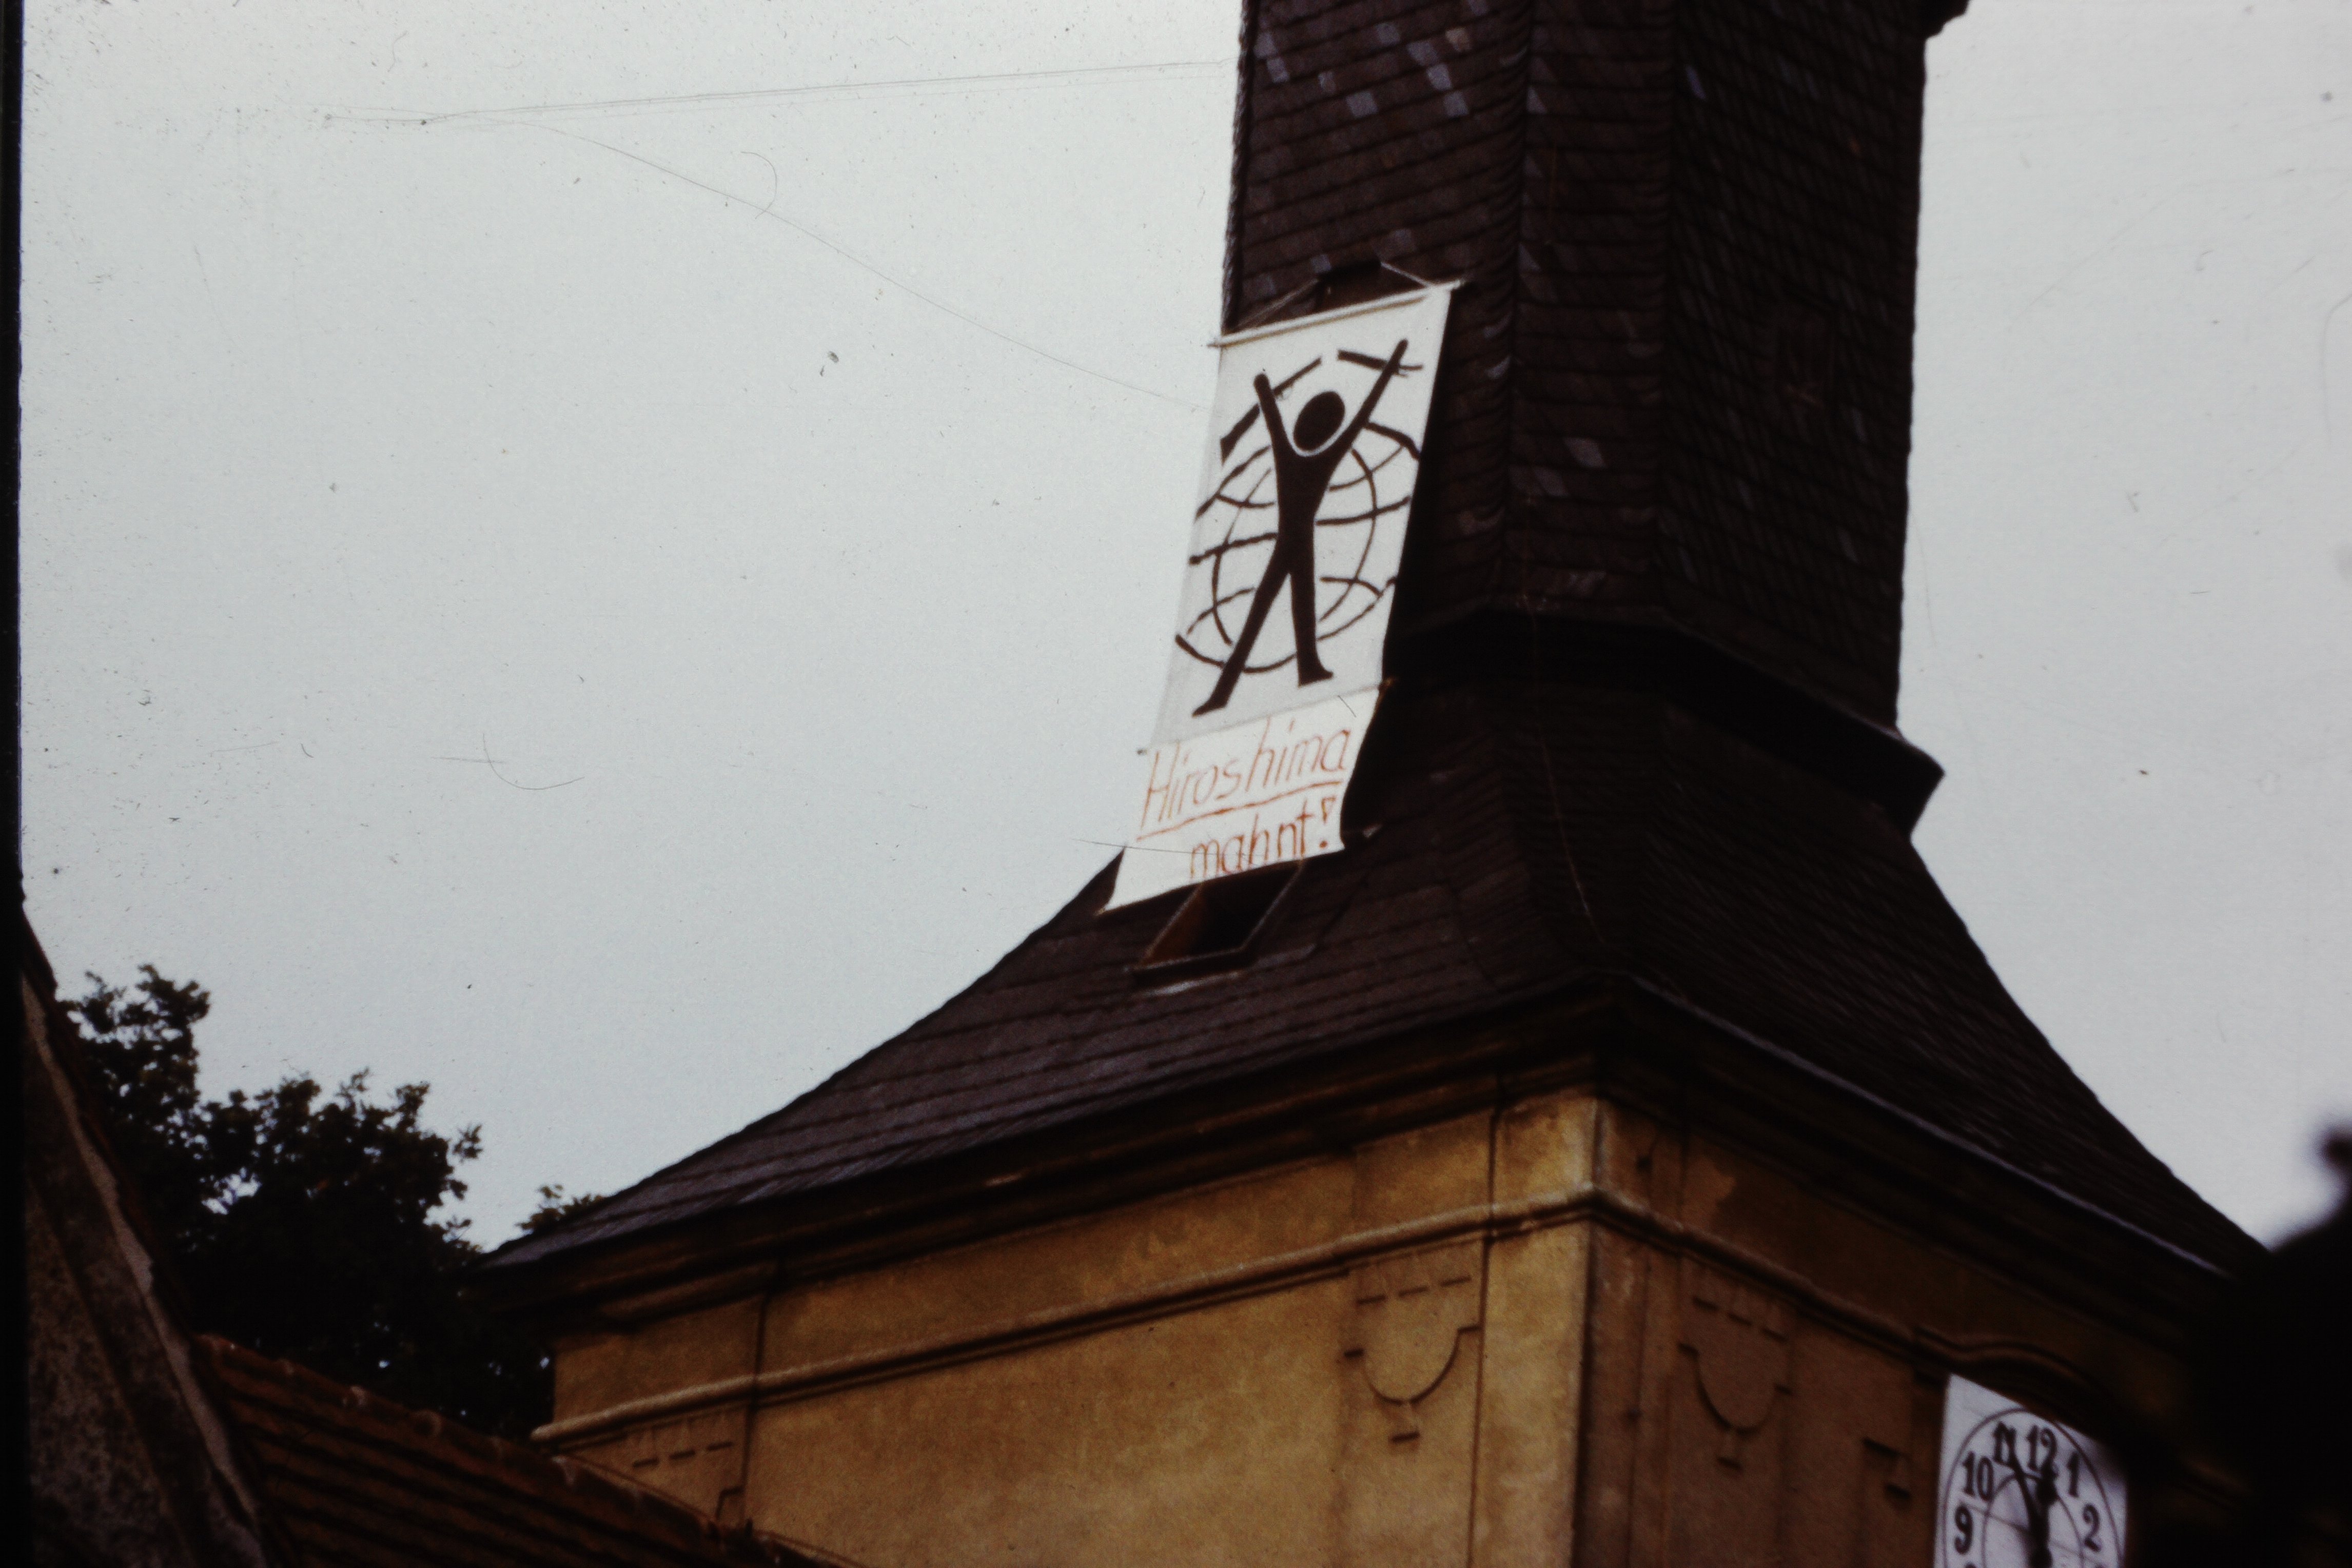 Kirchturm der Köritzer Gemeinde in Neustadt (Dosse): Transparent mit aufgemaltem "Mann vor Weltkugel" und der Aufschrift "Hiroshima mahnt!" (DDR Geschichtsmuseum im Dokumentationszentrum Perleberg CC BY-SA)